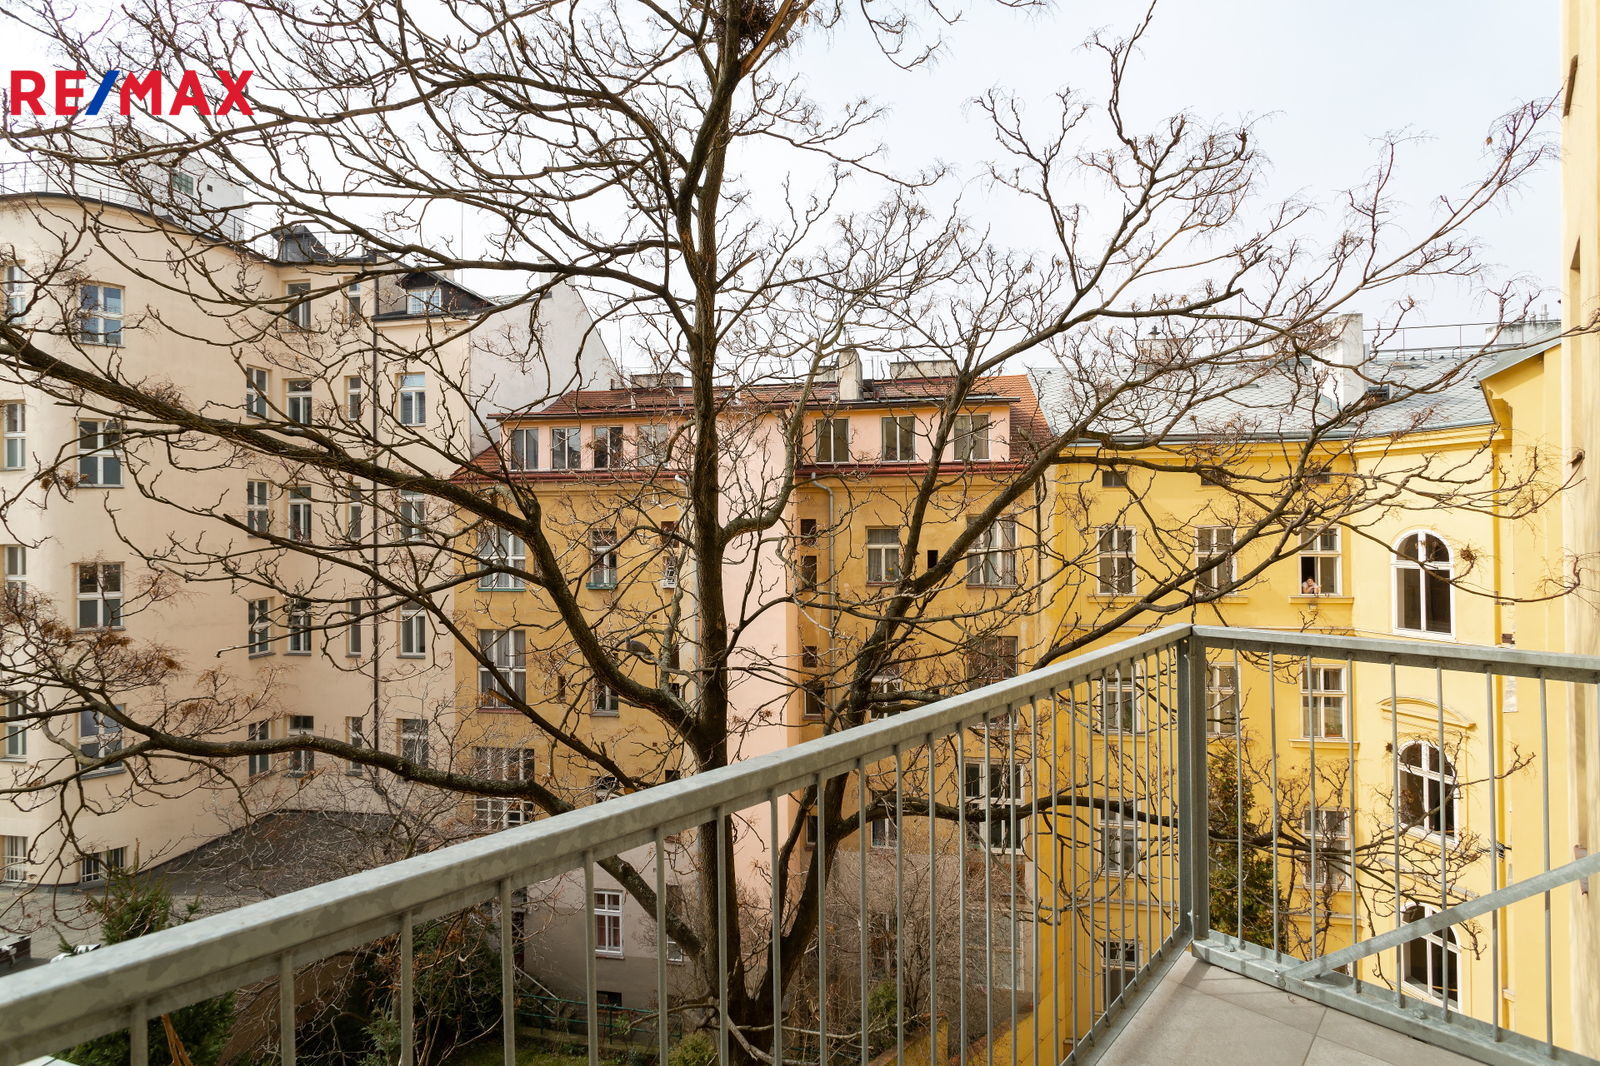 K pronájmu nový, krásný a světlý byt 1+kk s balkónem v čerstvě zrekonstruovaném domě na Vinohradech